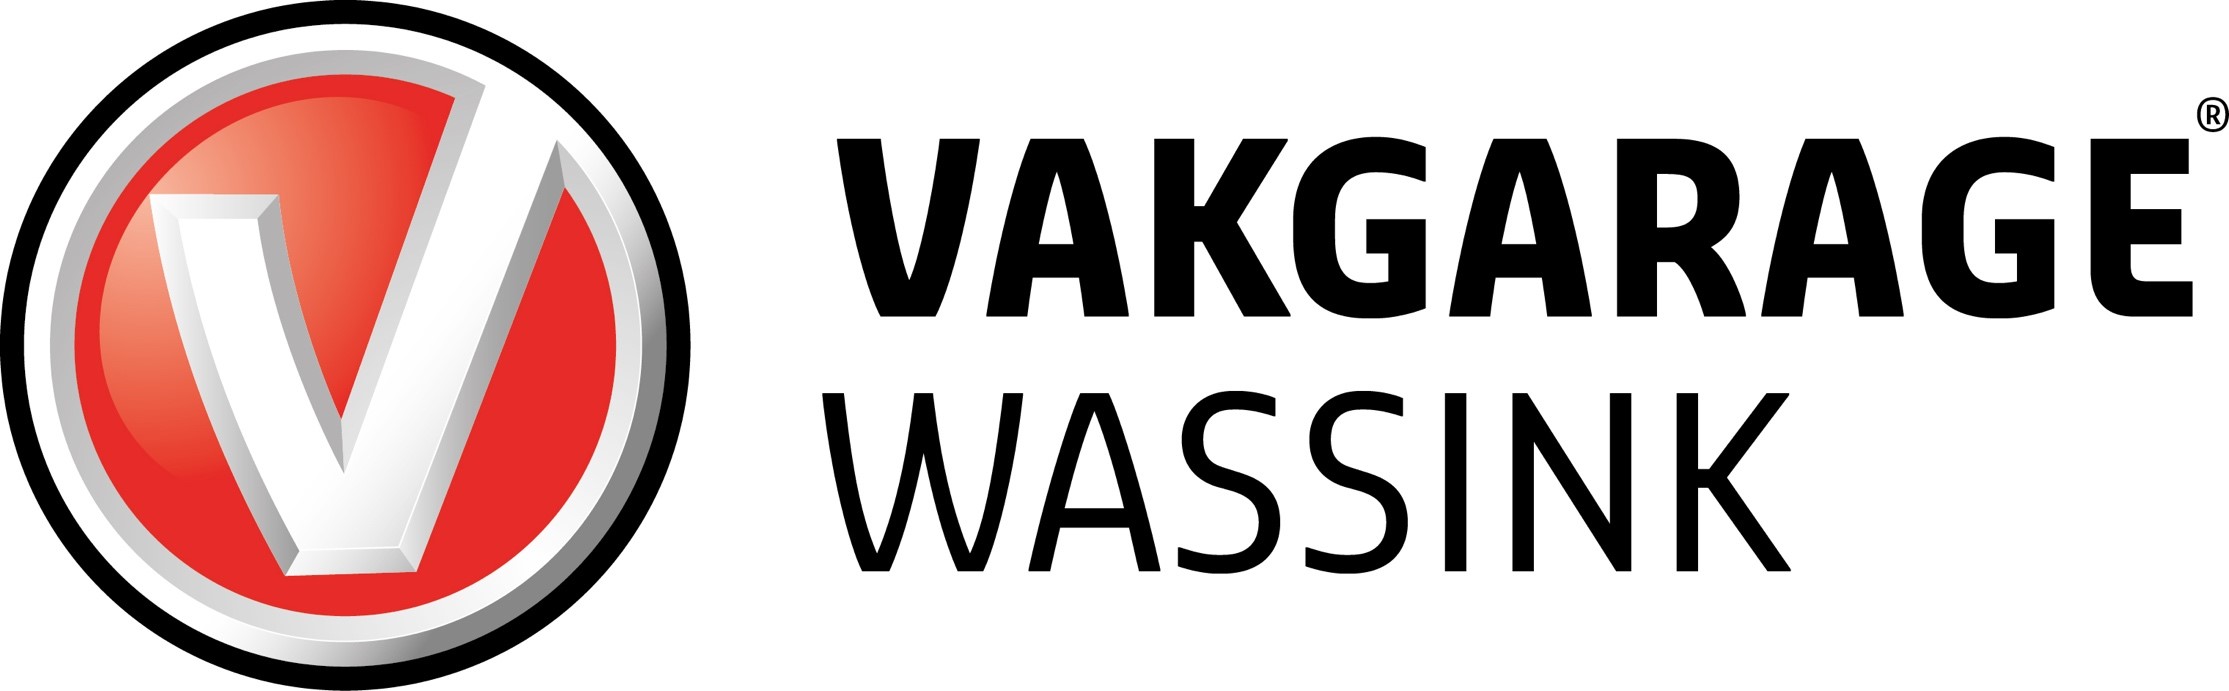 Autobedrijf Wassink B.V.